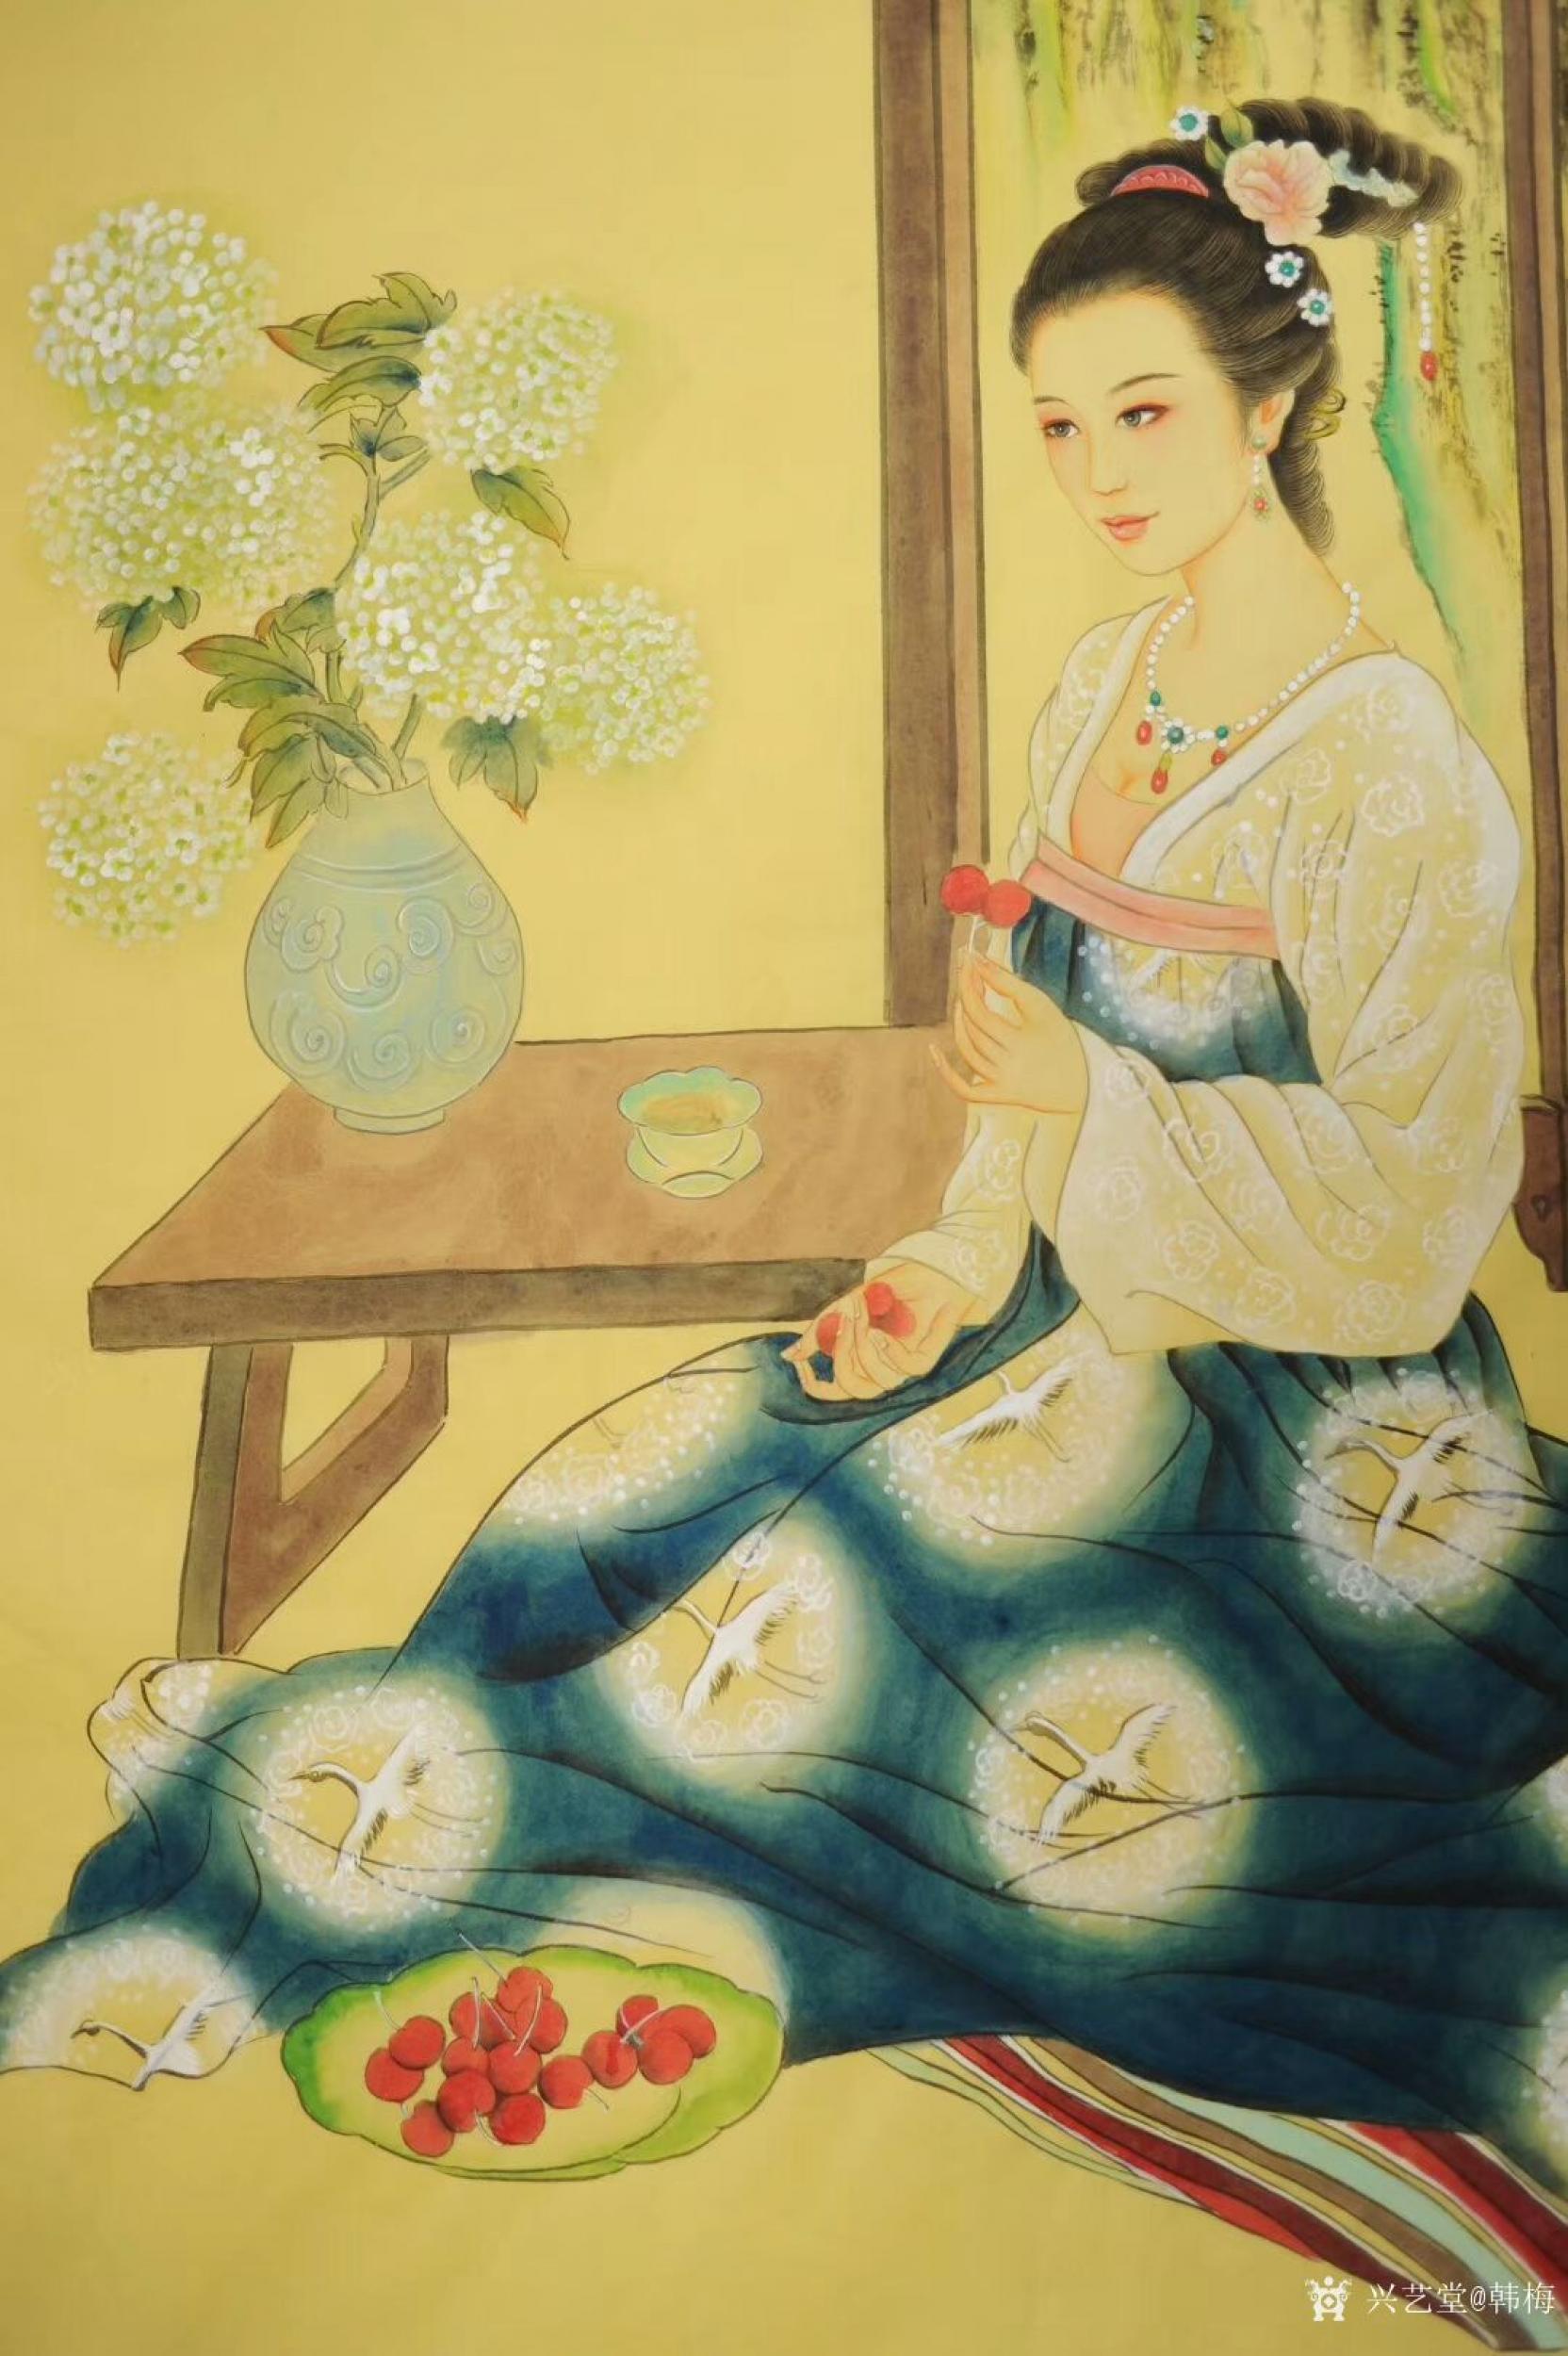 韩梅日志-国画人物工笔画《仕女图》美女吃荔枝,尺寸四尺竖幅68x138